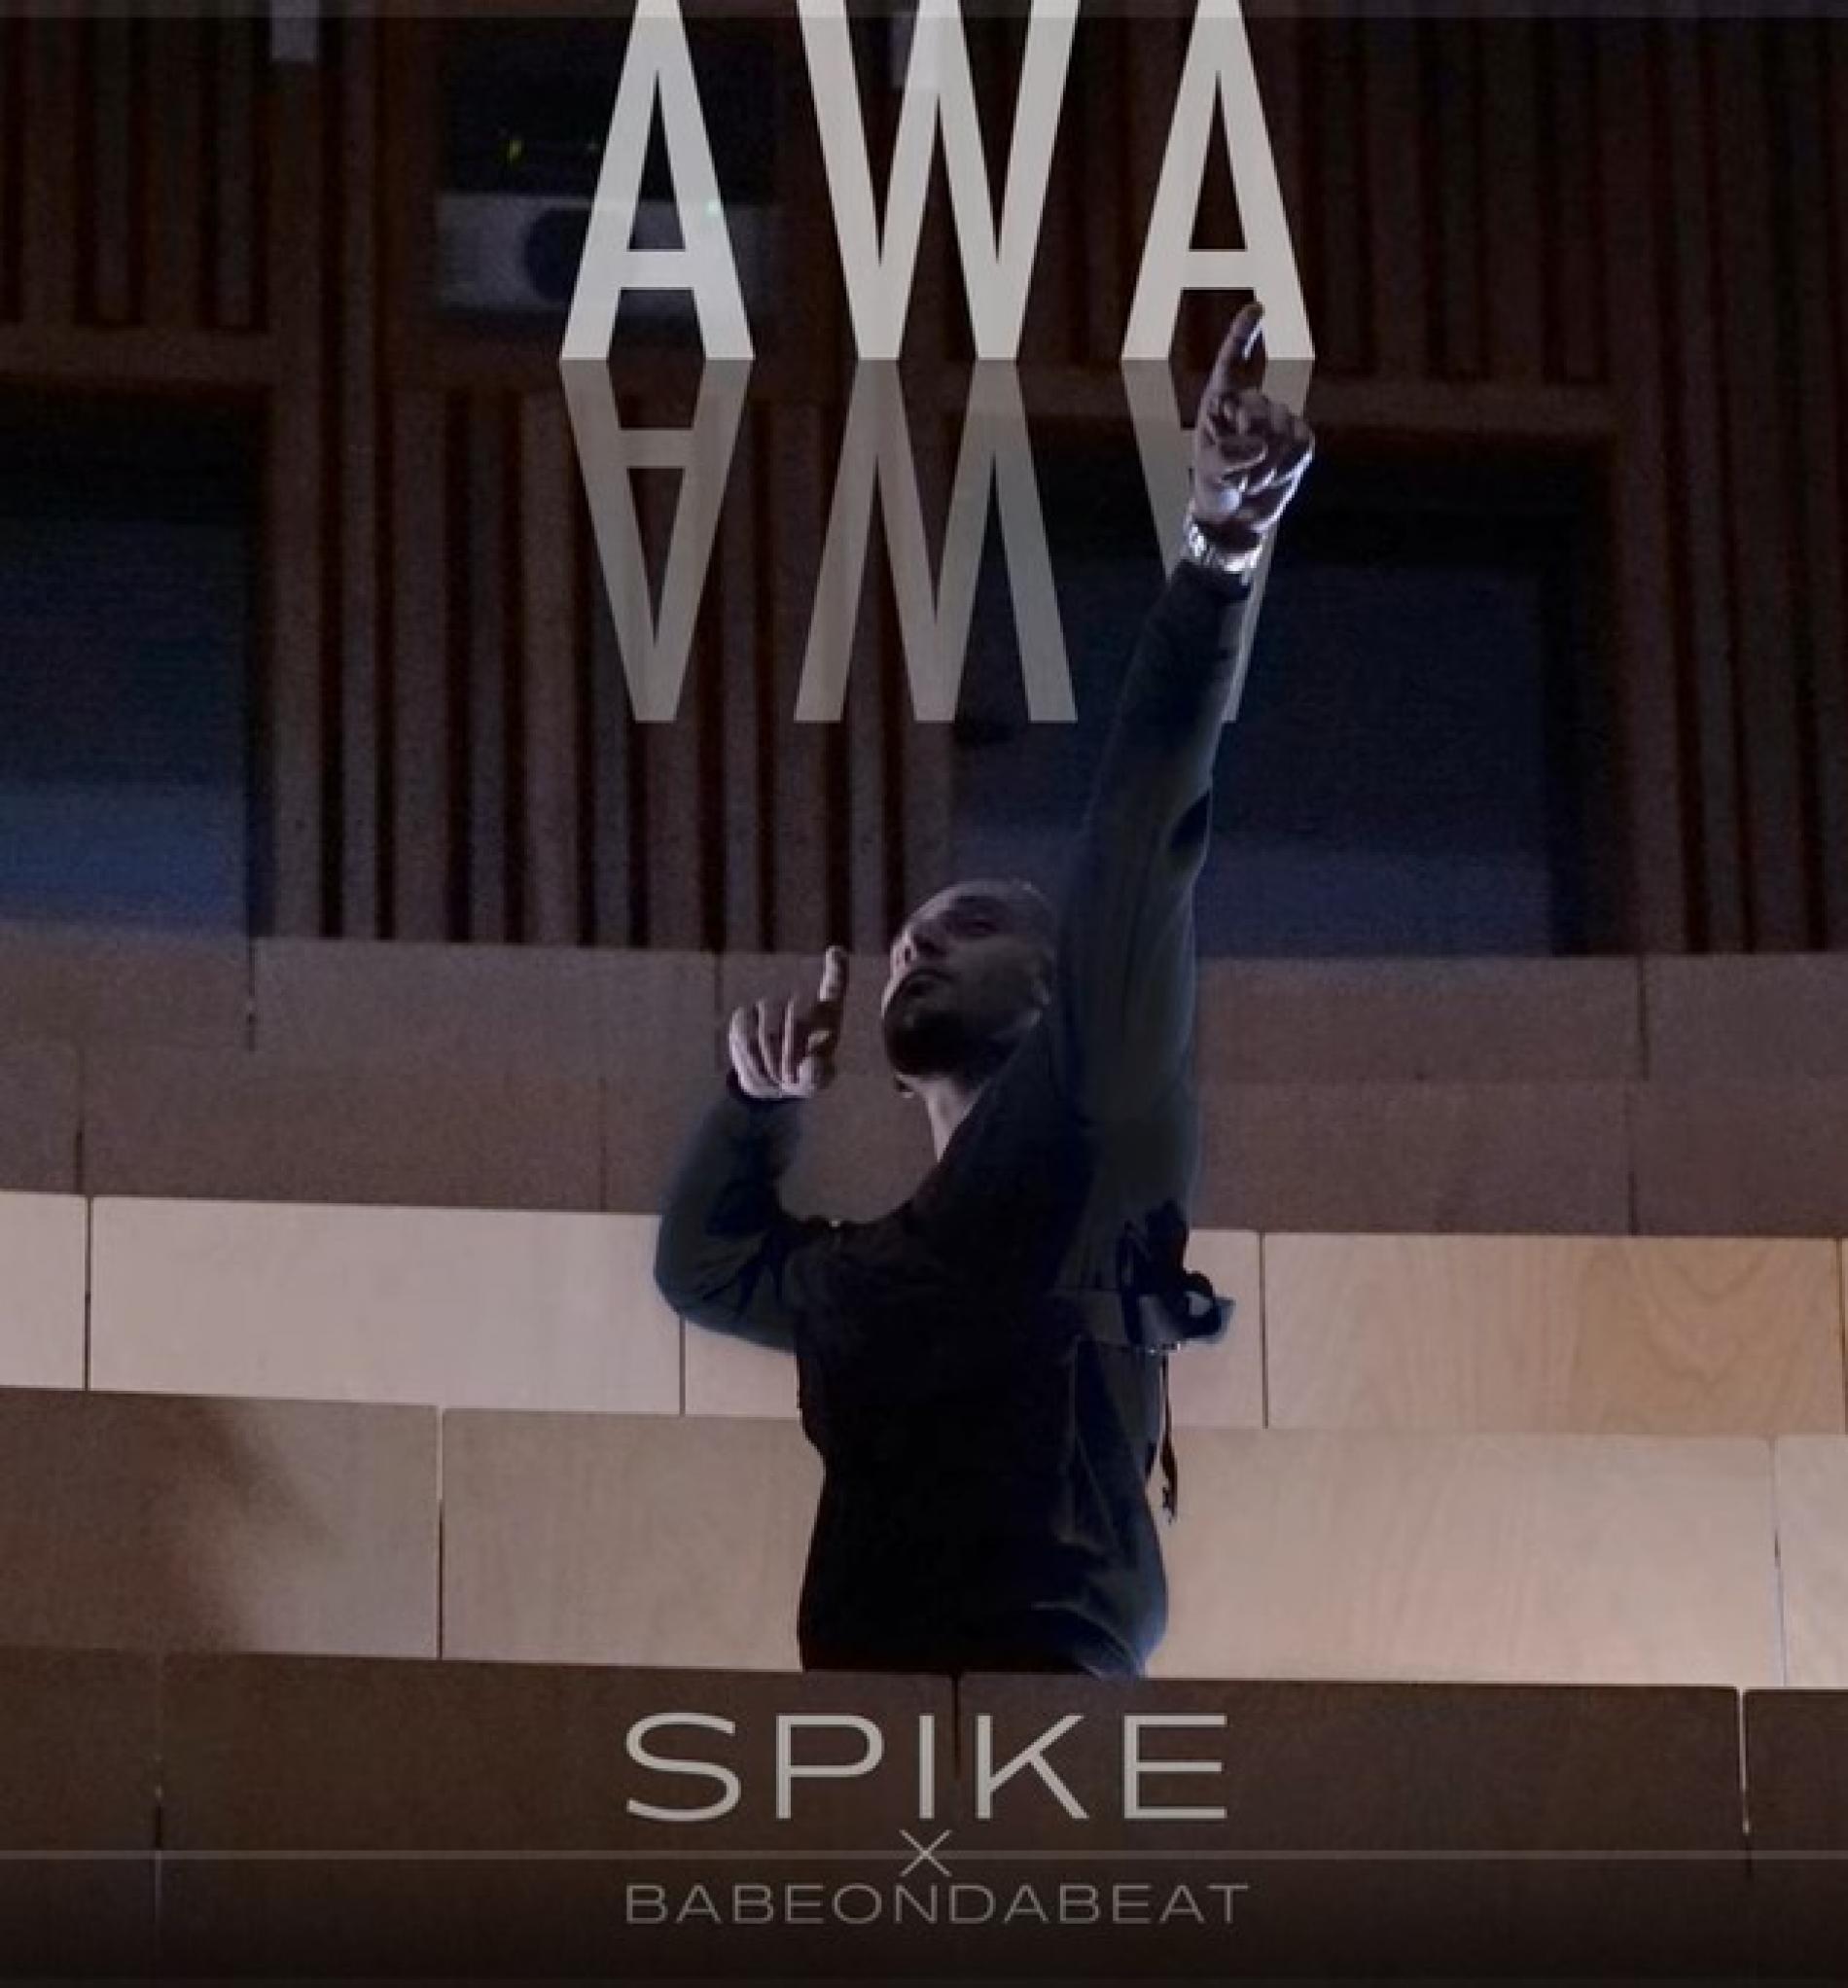 New Music : Spike – Awa Awa (ft BabeOnDaBeat)